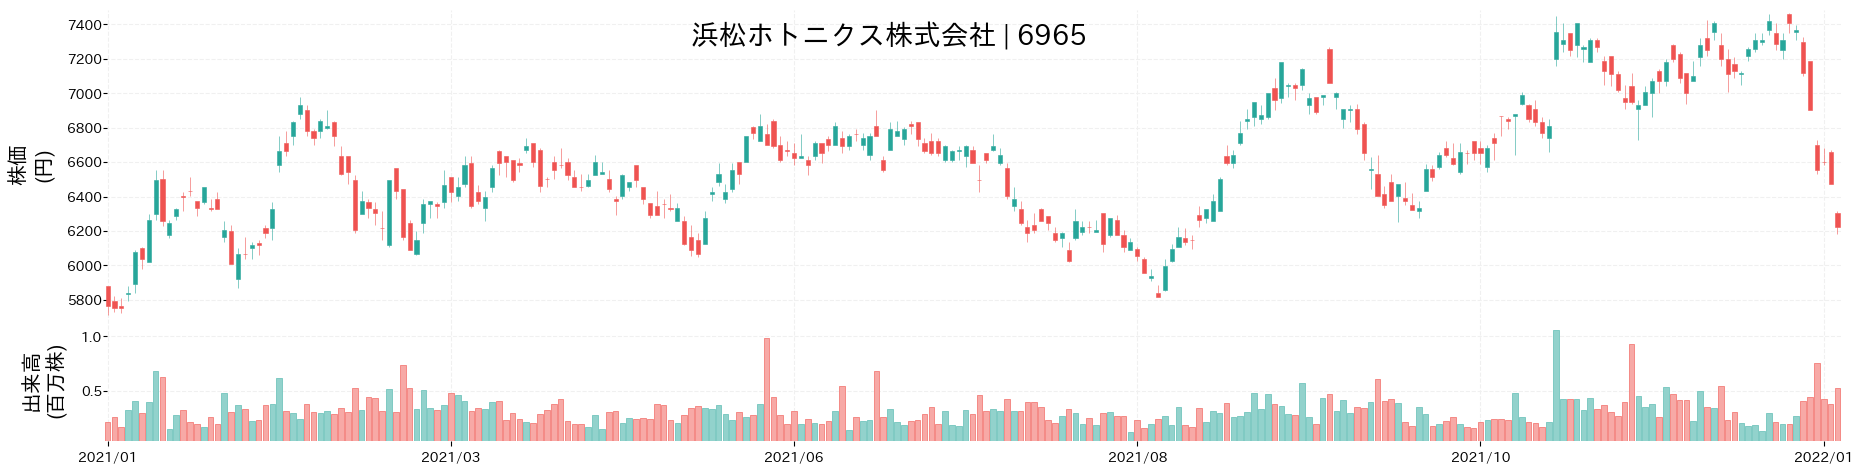 浜松ホトニクスの株価推移(2021)